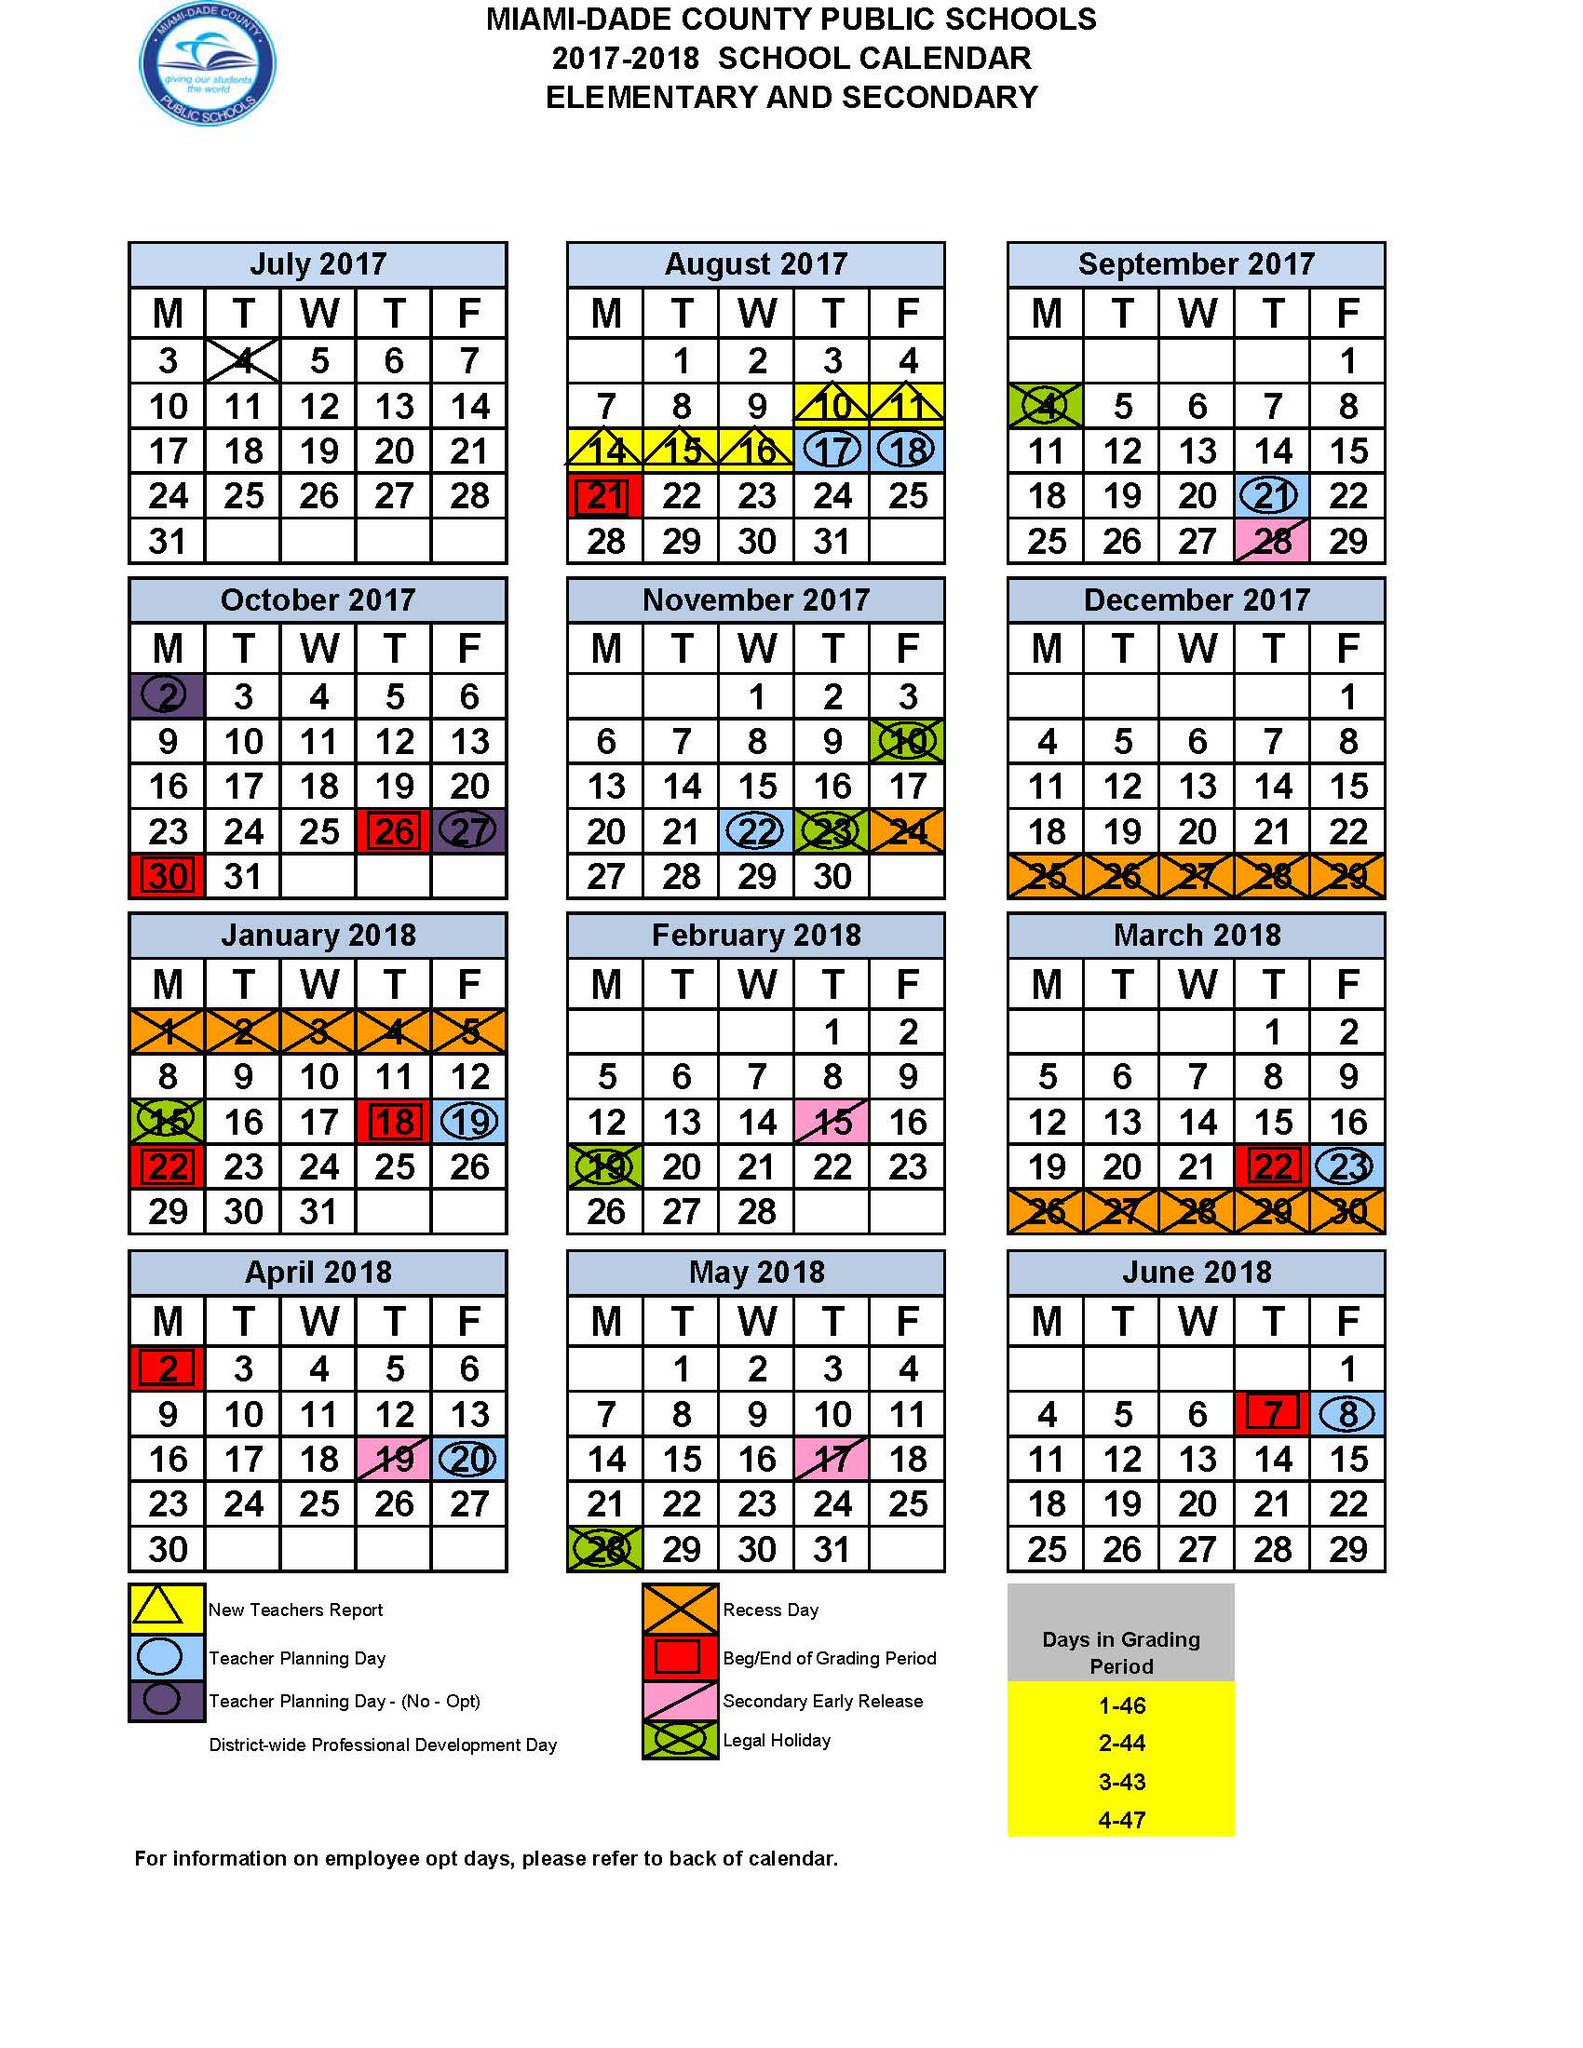 Miami Dade County Public Schools Calendar 20222023 October Calendar